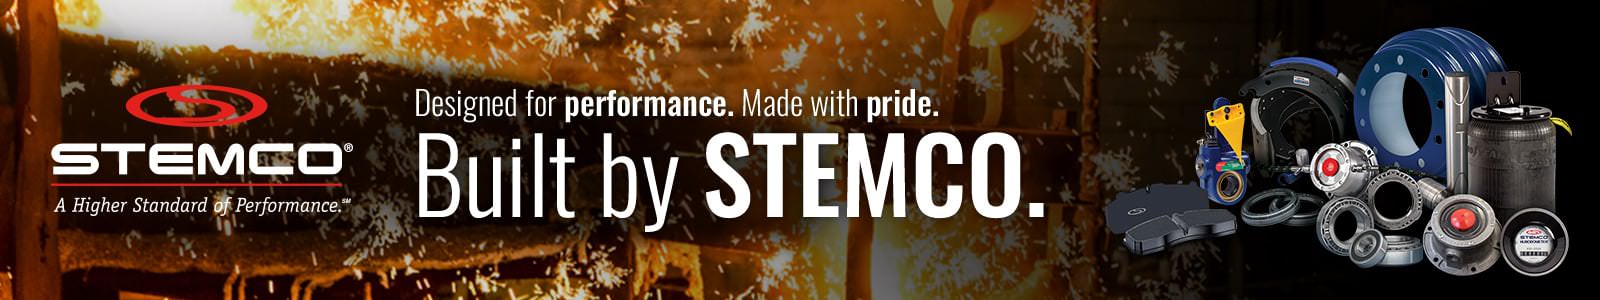 STEMCO Banner Image